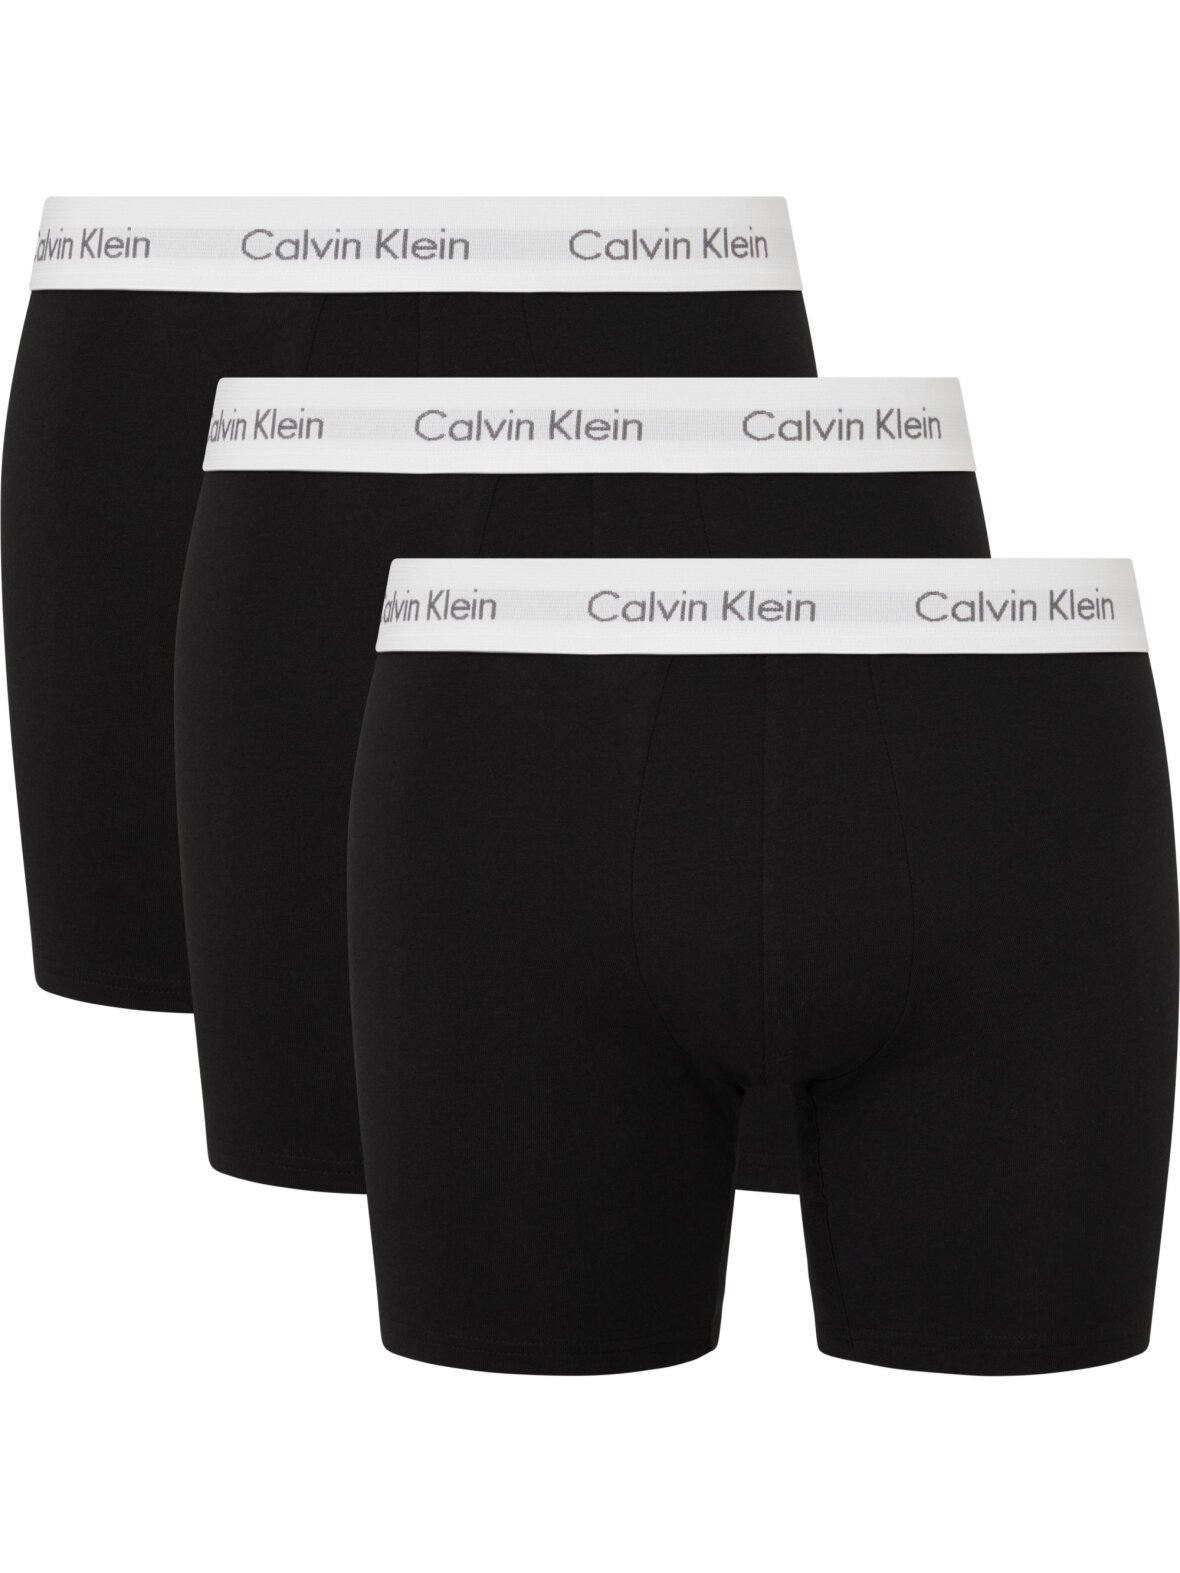 justere undersøgelse stemning CC Christensen - Undertøj - Calvin Klein Underwear - Calvin Klein 3p boxer  brief